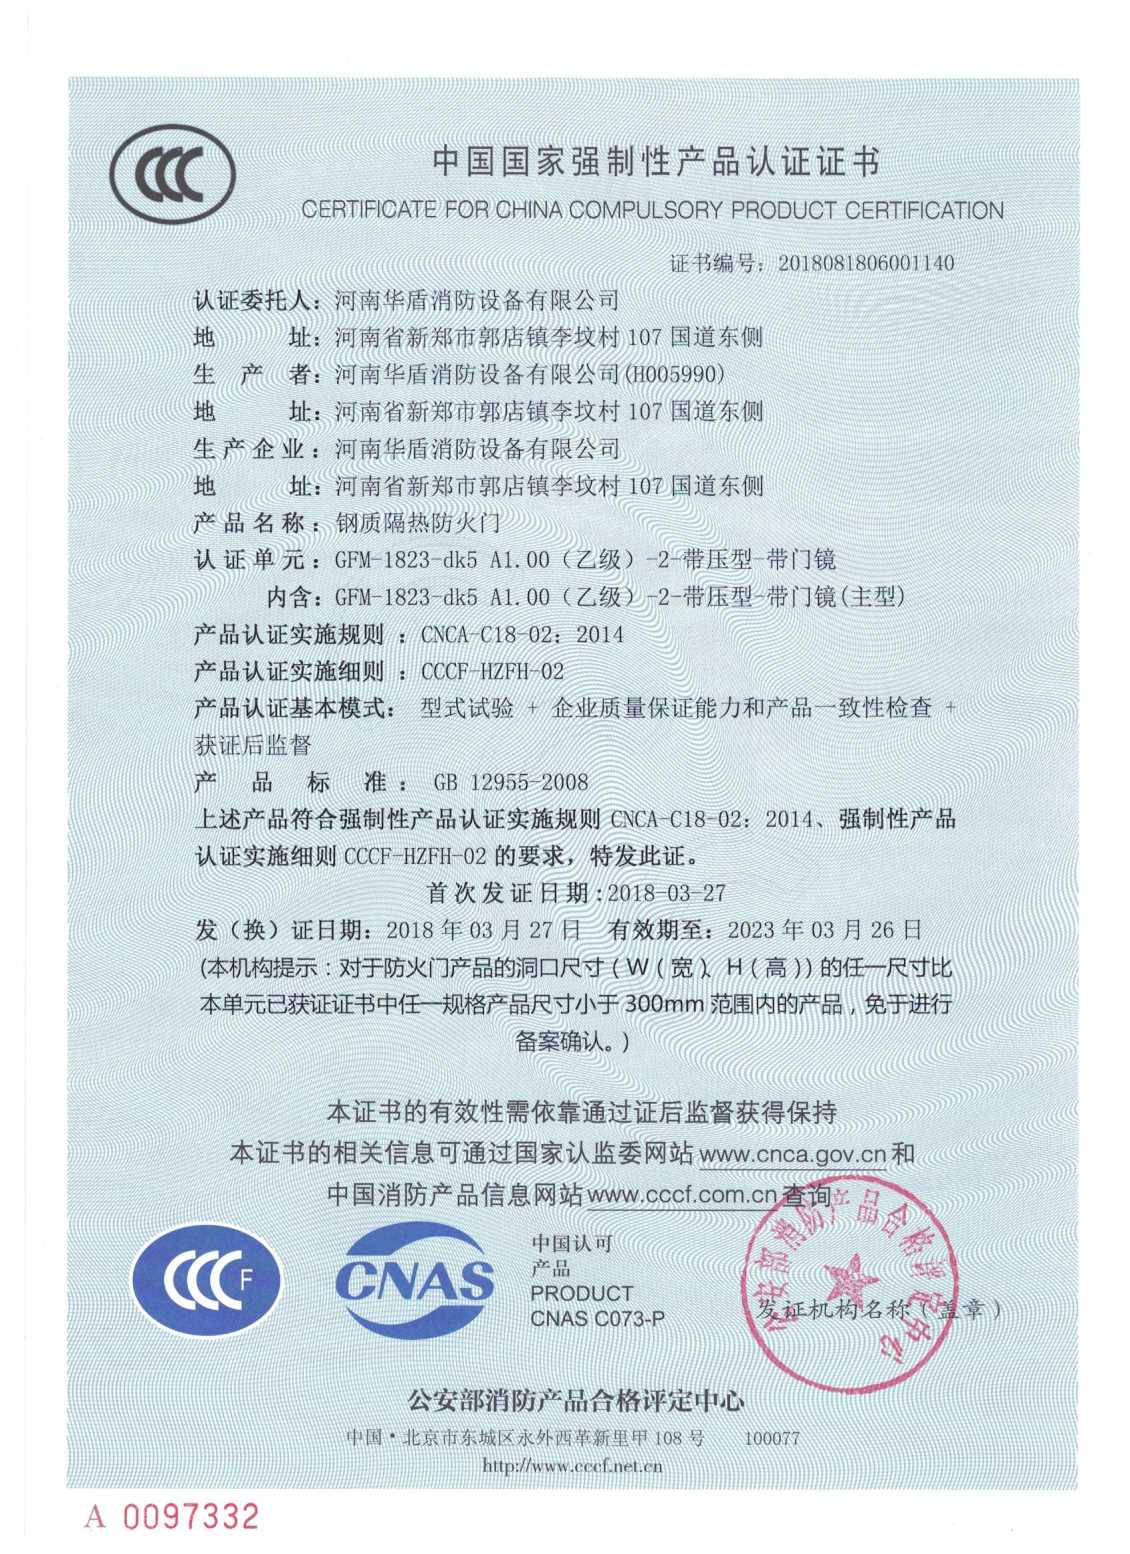 洛阳GFM-1823-dk5A1.00(乙级）-2-3C证书